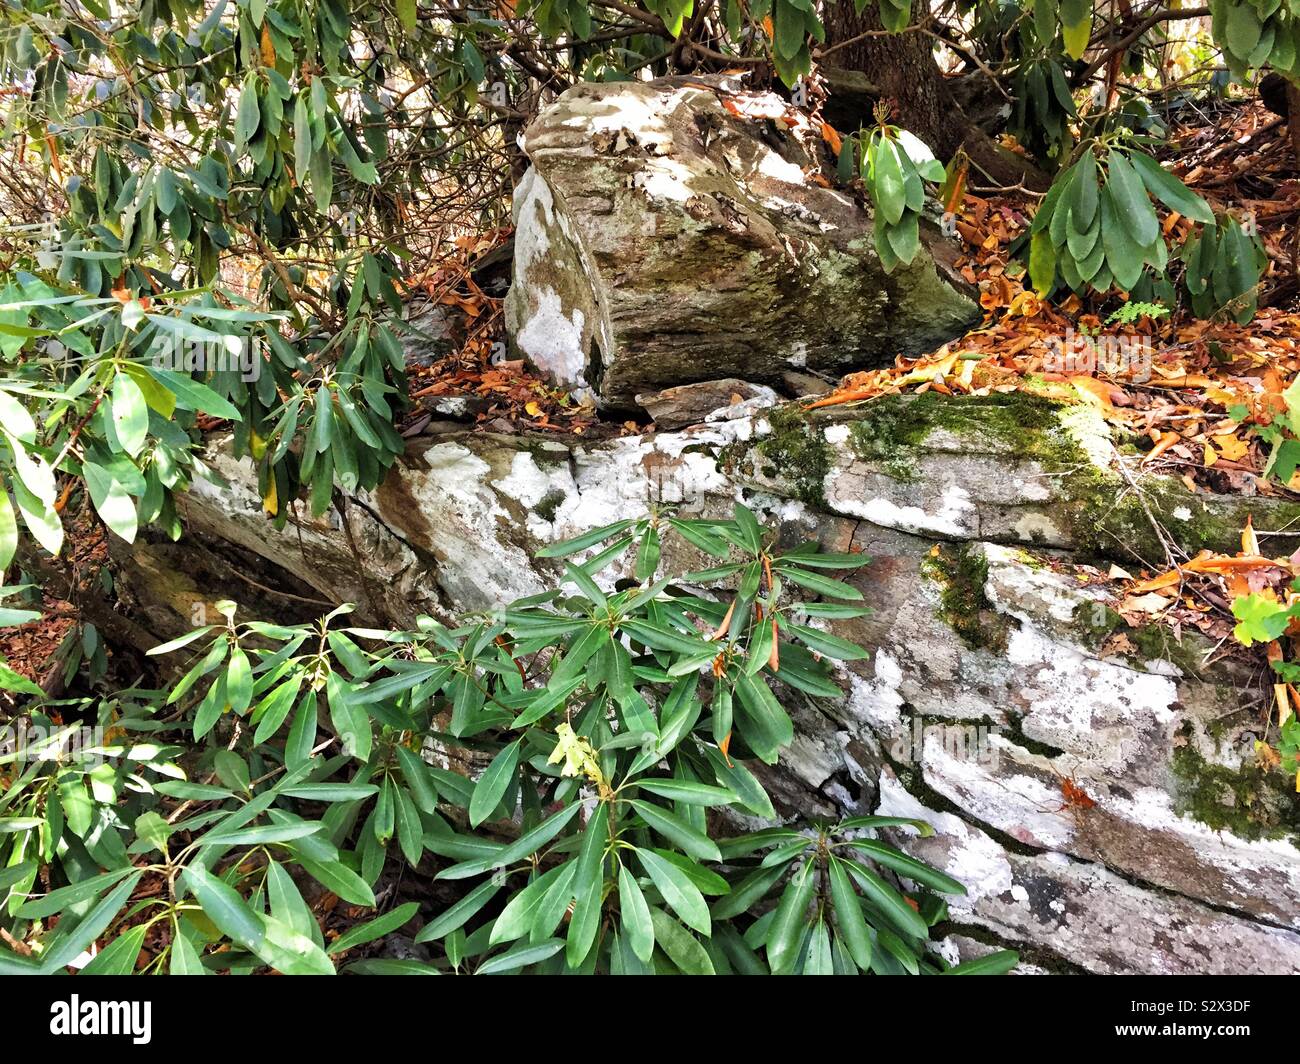 Rhododendron crecen plantas silvestres nativas a lo largo de los senderos del bosque y las rocas de las montañas Apalaches y Blue Ridge Mountains, en el norte de Georgia, EE.UU. Foto de stock